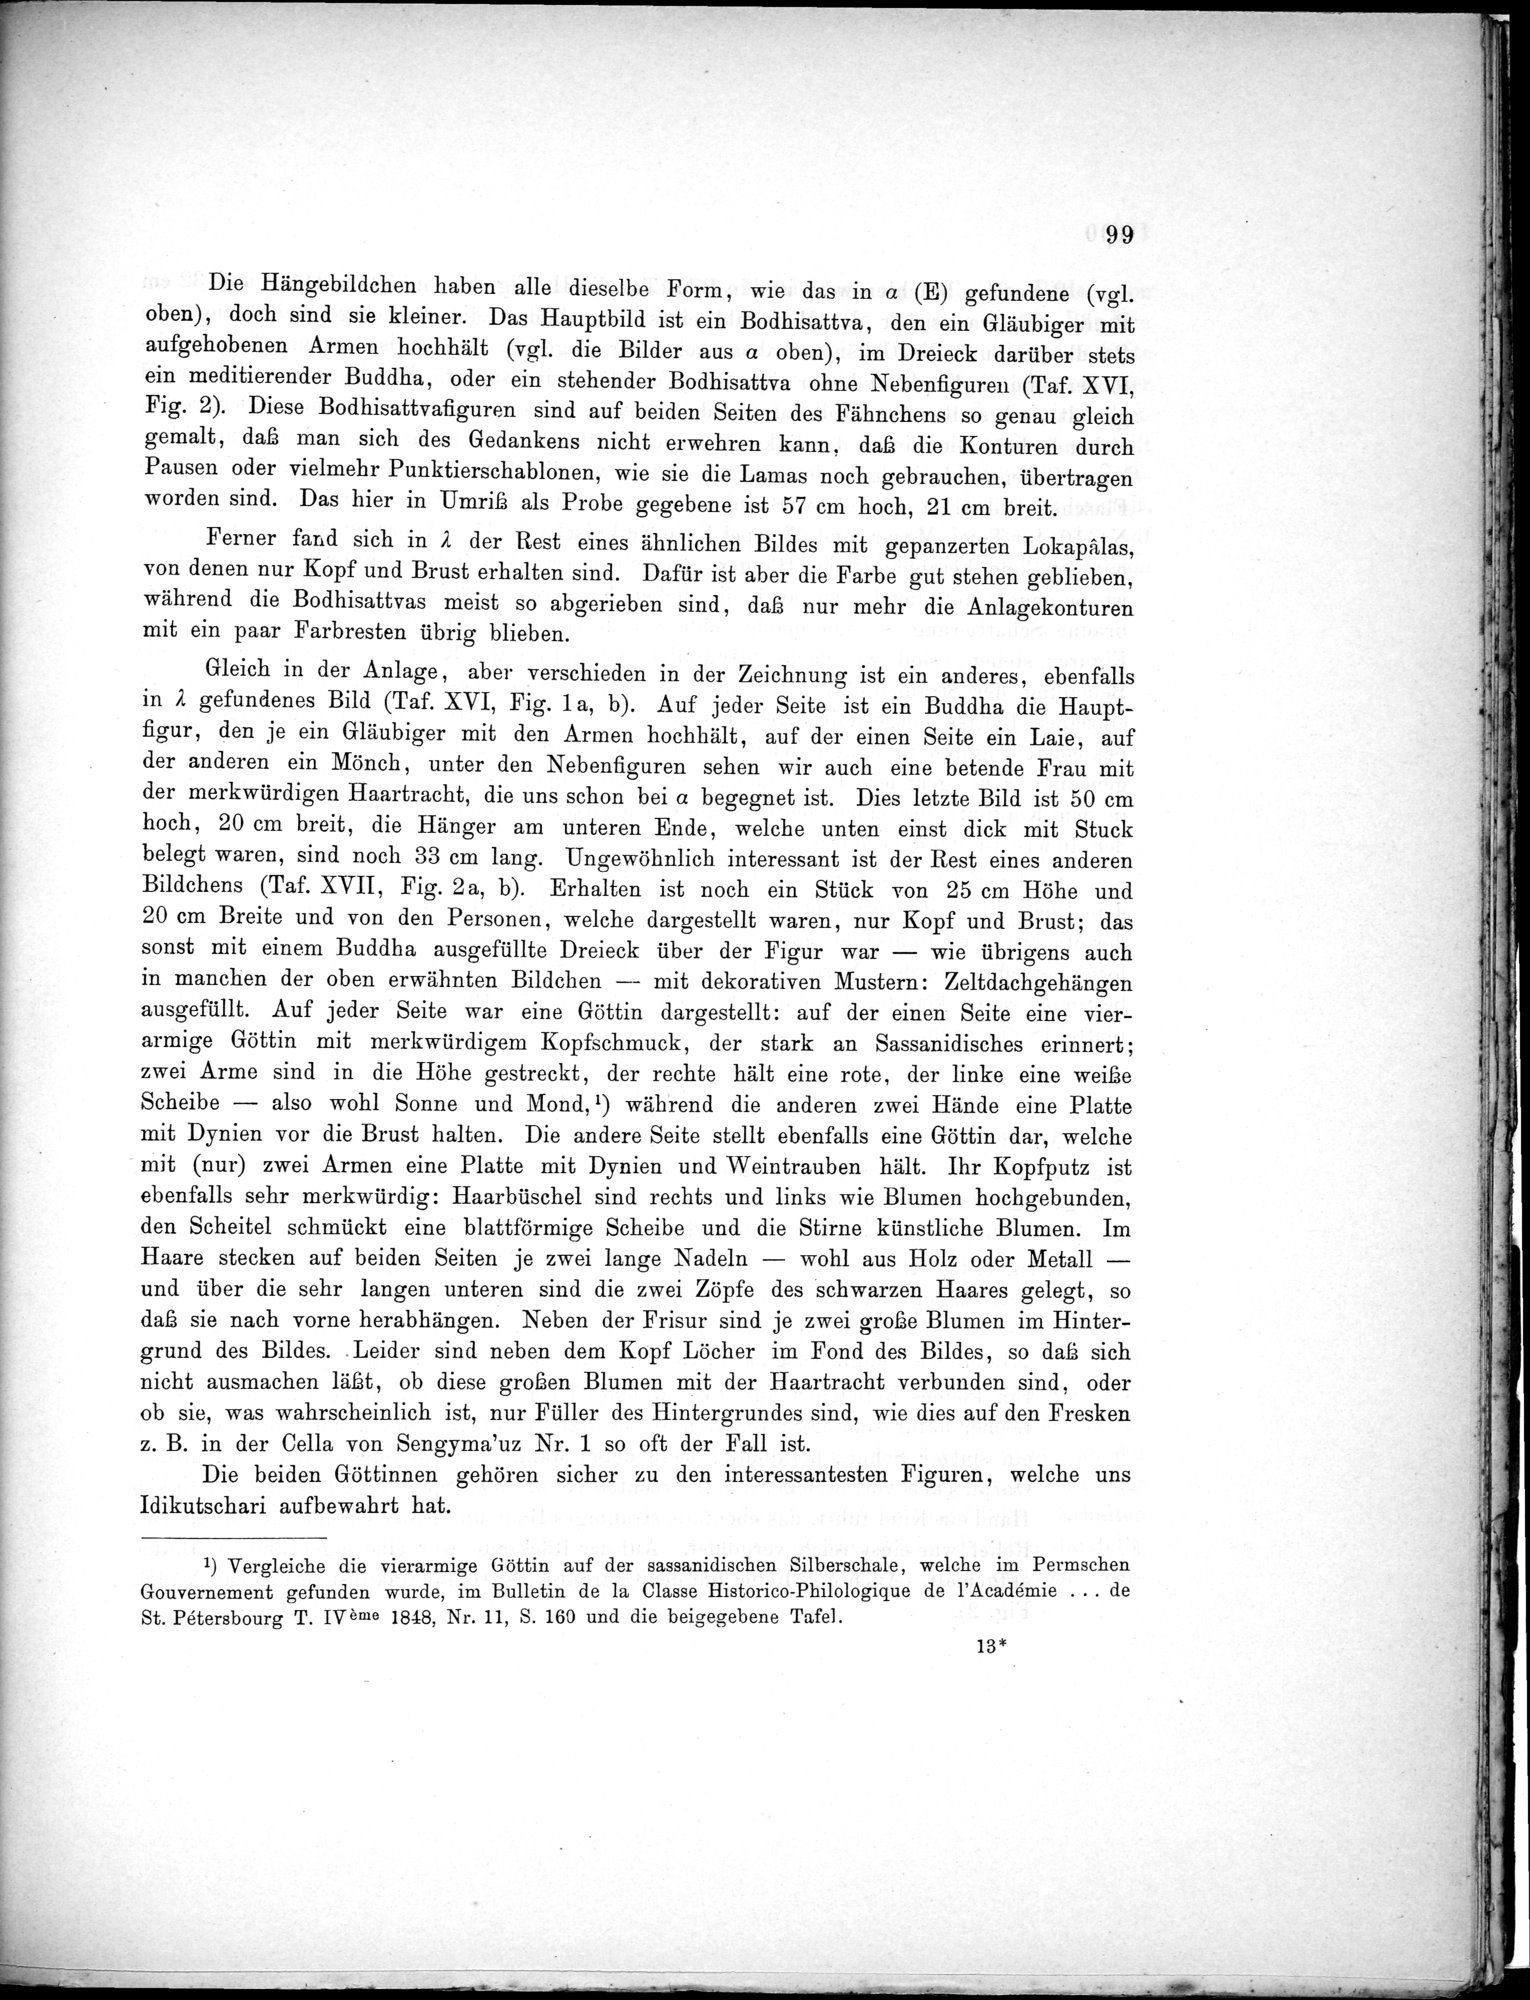 Bericht über archäologische Arbeiten in Idikutschari und Umgebung im Winter 1902-1903 : vol.1 / Page 109 (Grayscale High Resolution Image)